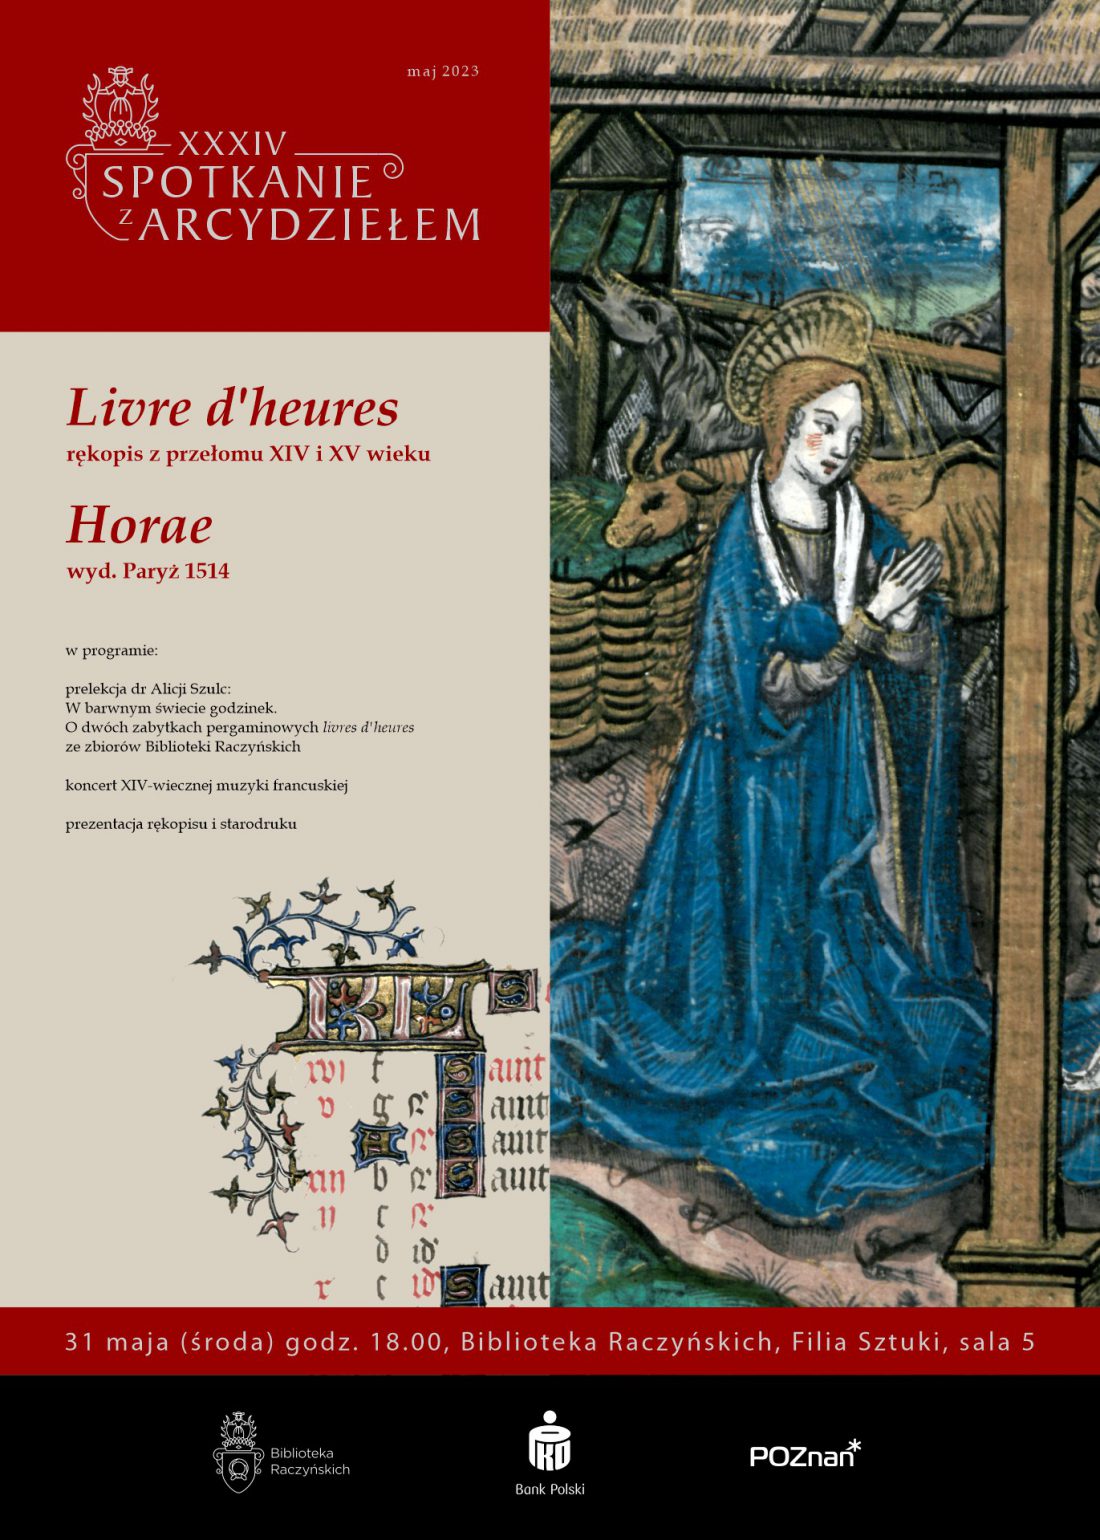 Plakat: u góry na czerwonym pasie napis XXXIV Spotkanie z Arcydziełem, z lewej strony program wydarzenia, po prawej ilustracja ze starodruku przedstawiająca Maryję, w niebieskiej suknie, ze złożonymi rękami, na tle stajenki